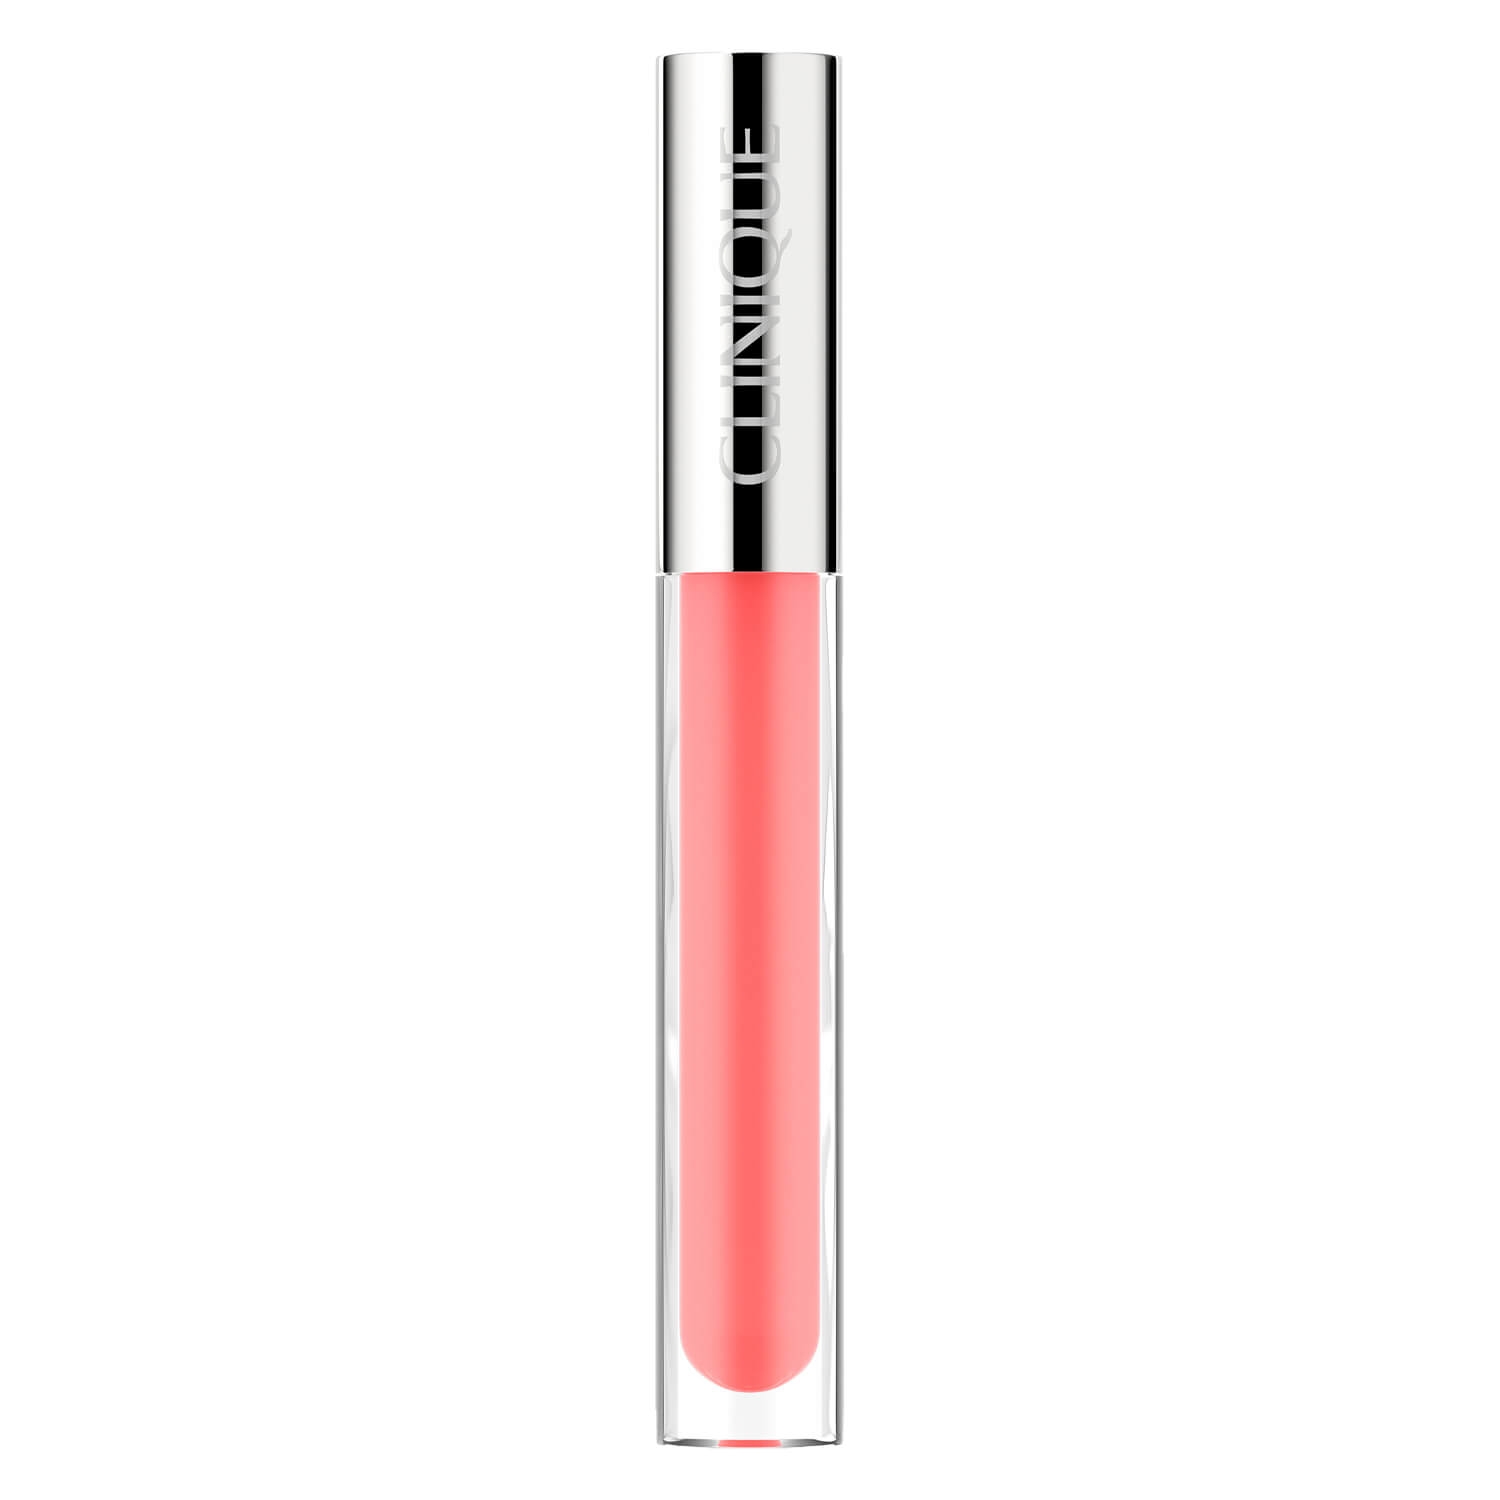 Produktbild von Clinique Lips - Pop Plush Creamy Lip Gloss 06 Bubblegum Pop